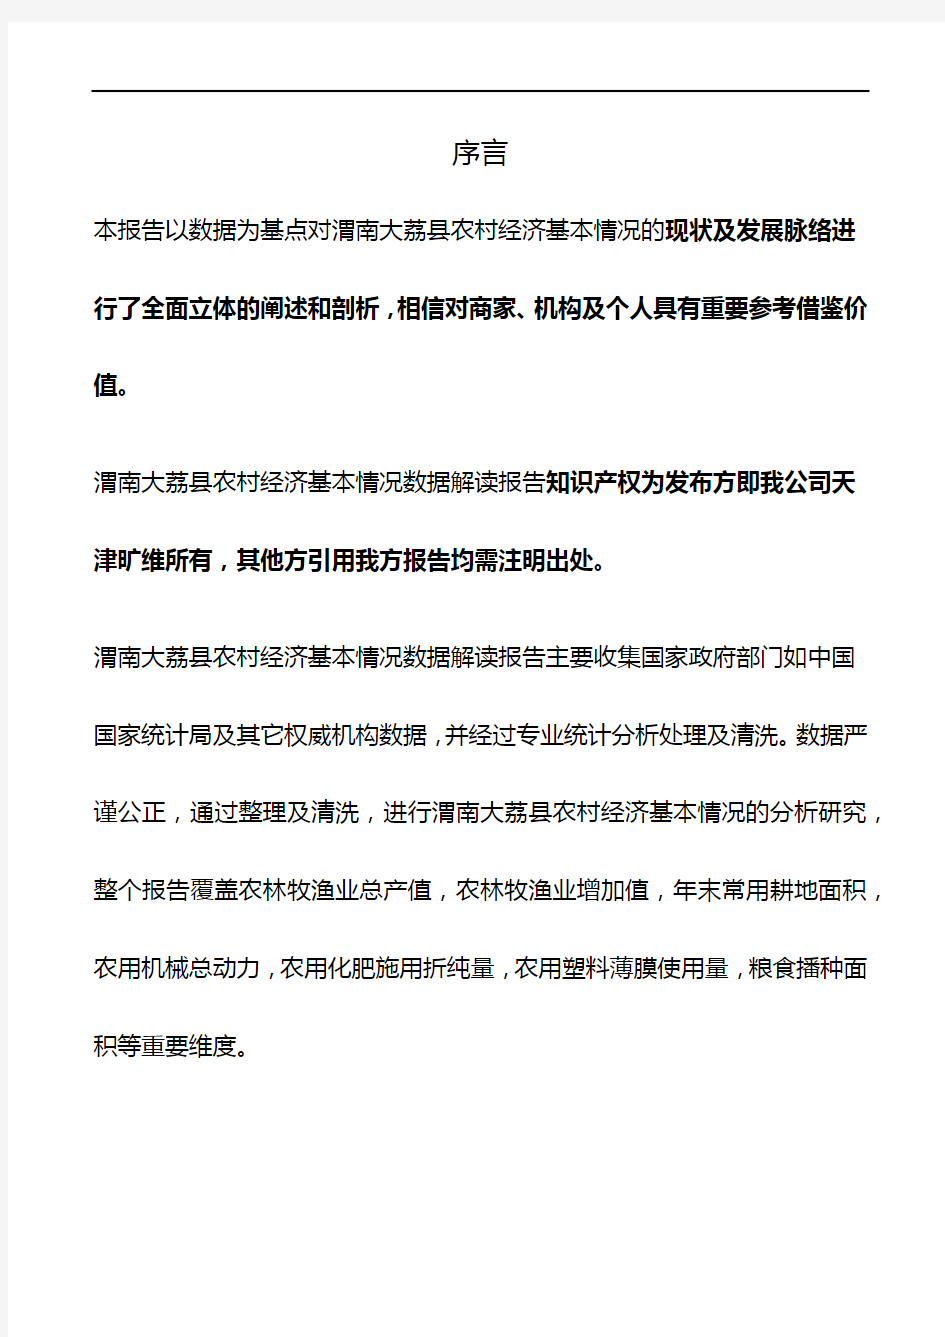 陕西省渭南大荔县农村经济基本情况3年数据解读报告2020版